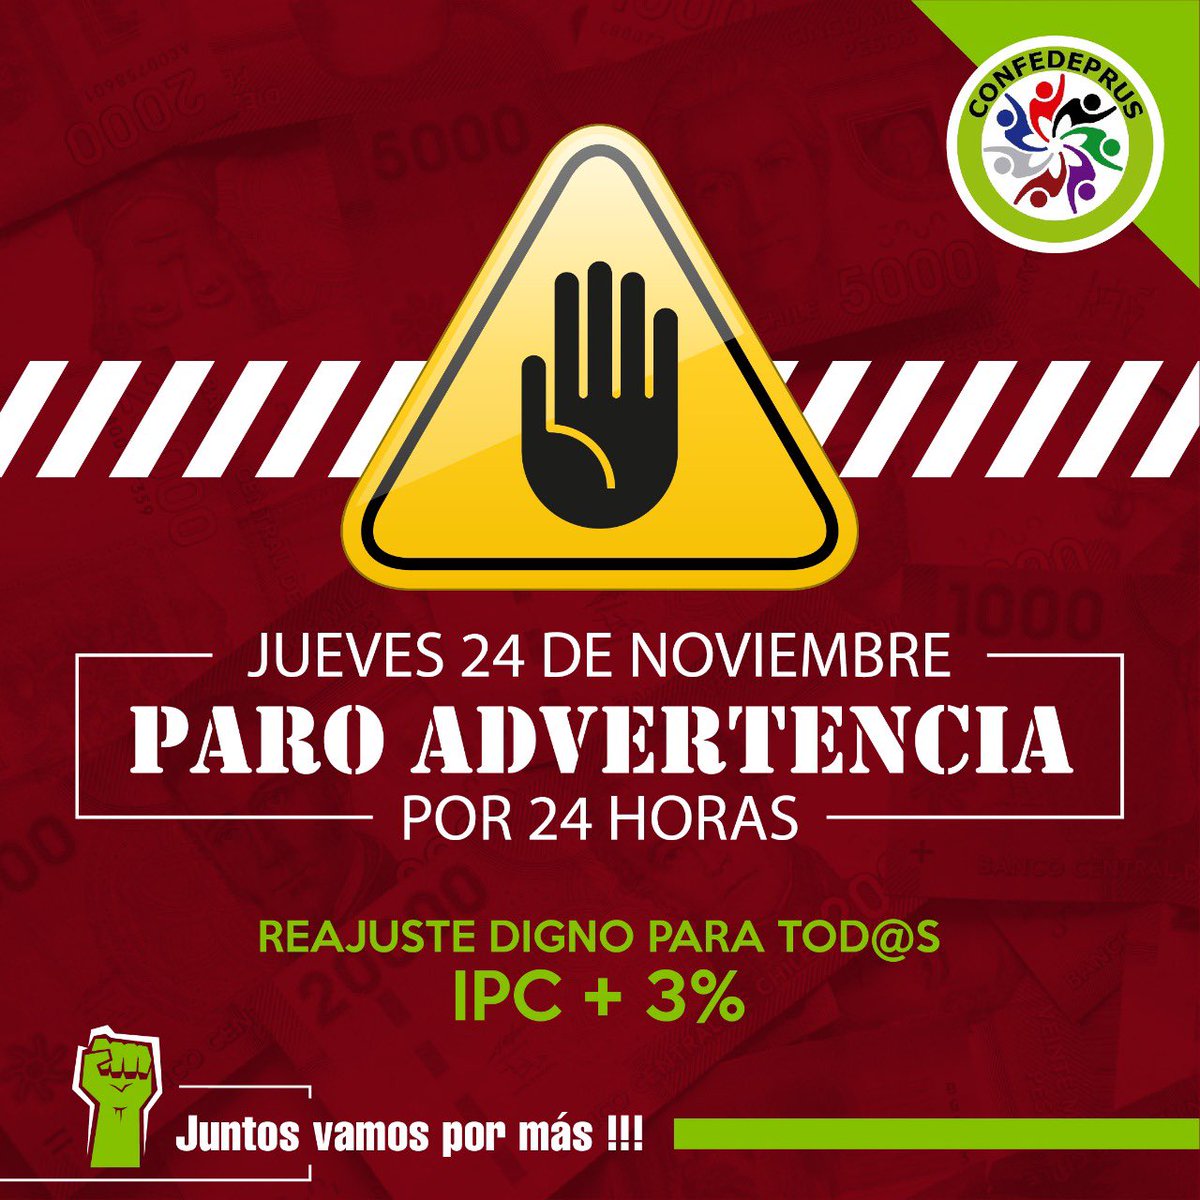 Este jueves 24 de noviembre, #paro de advertencia en demanda de un #reajustedigno y #trabajodecente En #confedeprus #vamospormás